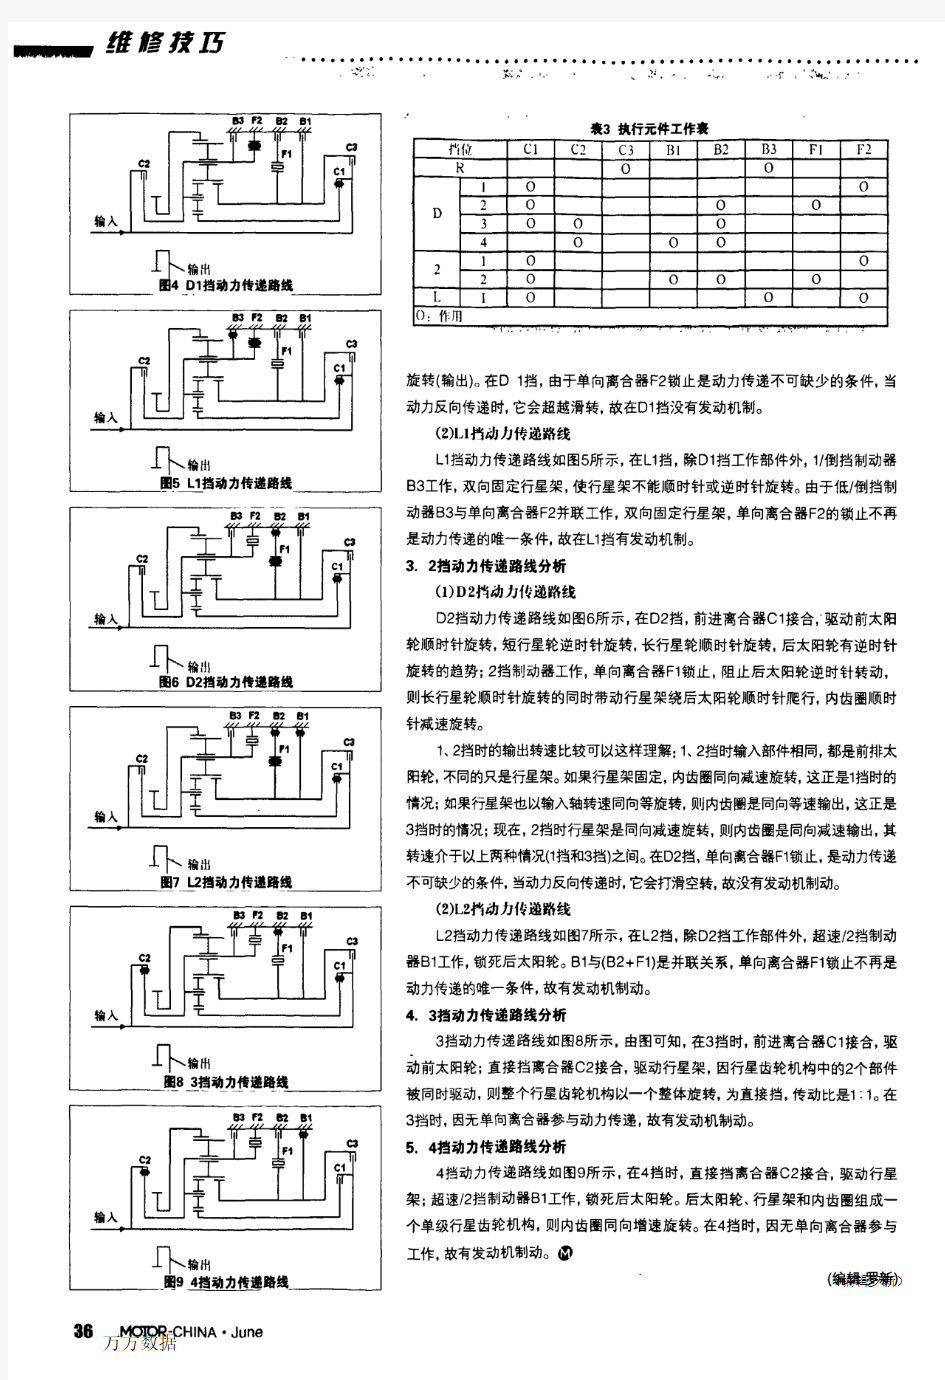 自动变速器动力传递路线分析(二十九)——广汽丰田雅利士U441E自动变速器动力传递路线